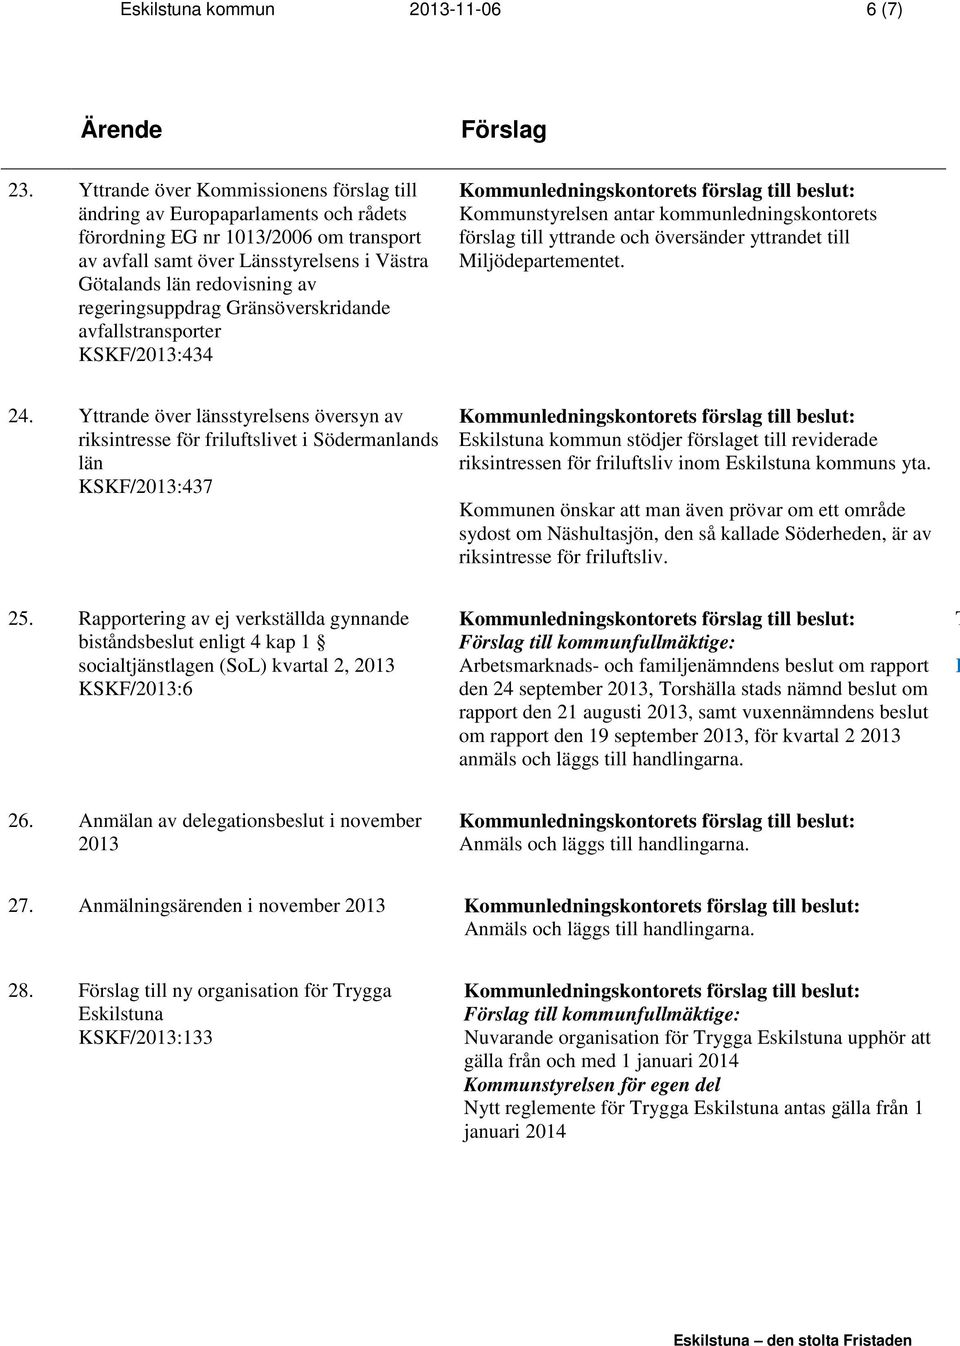 regeringsuppdrag Gränsöverskridande avfallstransporter KSKF/2013:434 Kommunstyrelsen antar kommunledningskontorets förslag till yttrande och översänder yttrandet till Miljödepartementet. 24.